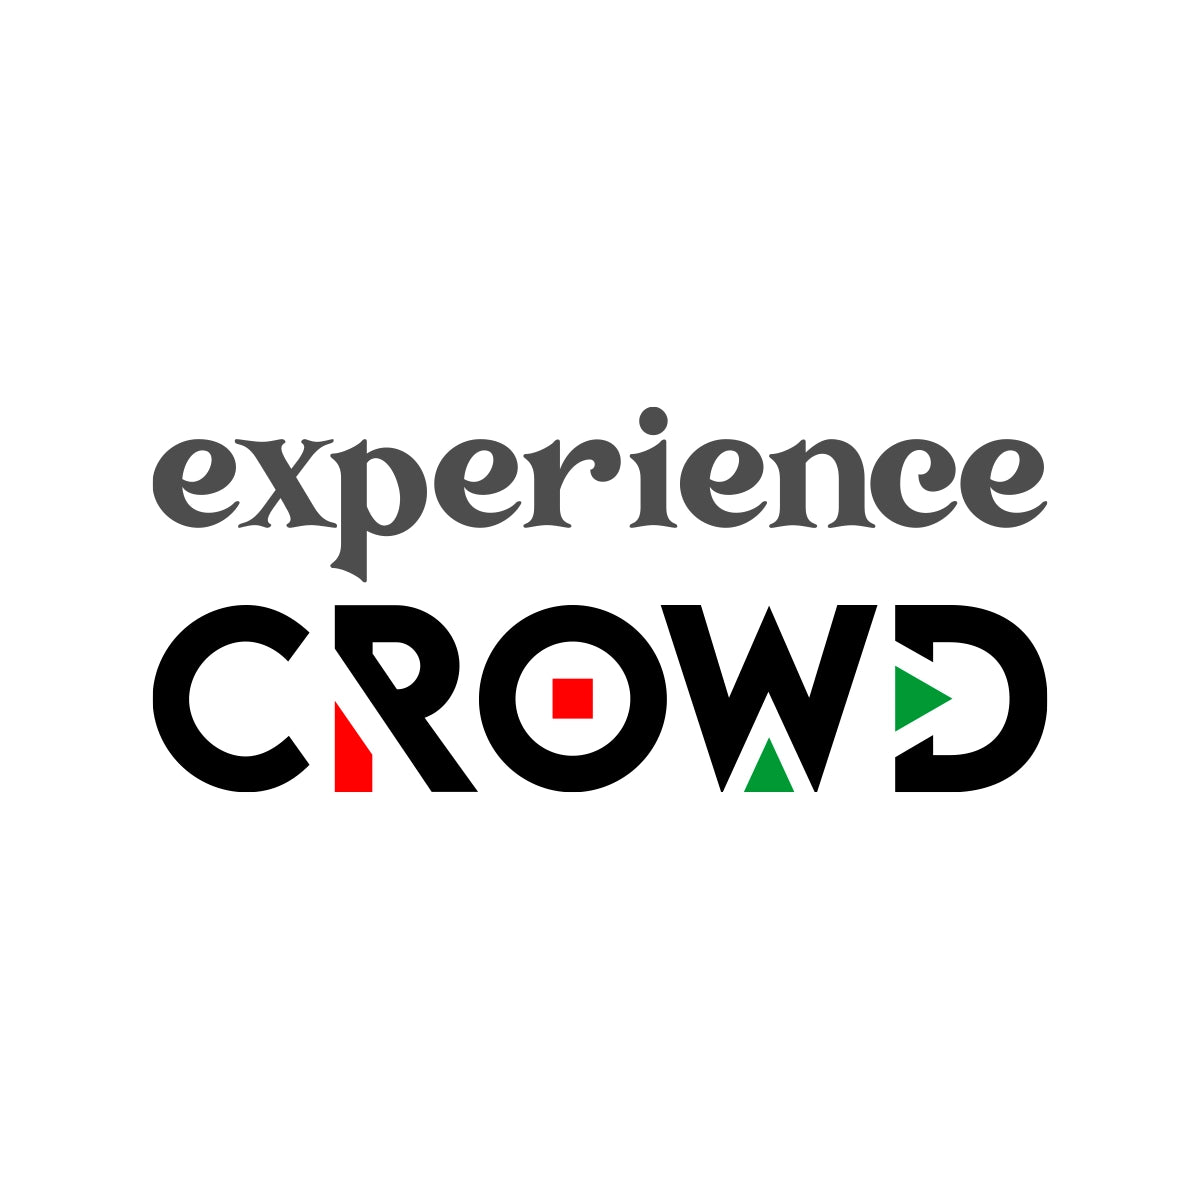 experiencecrowd.com